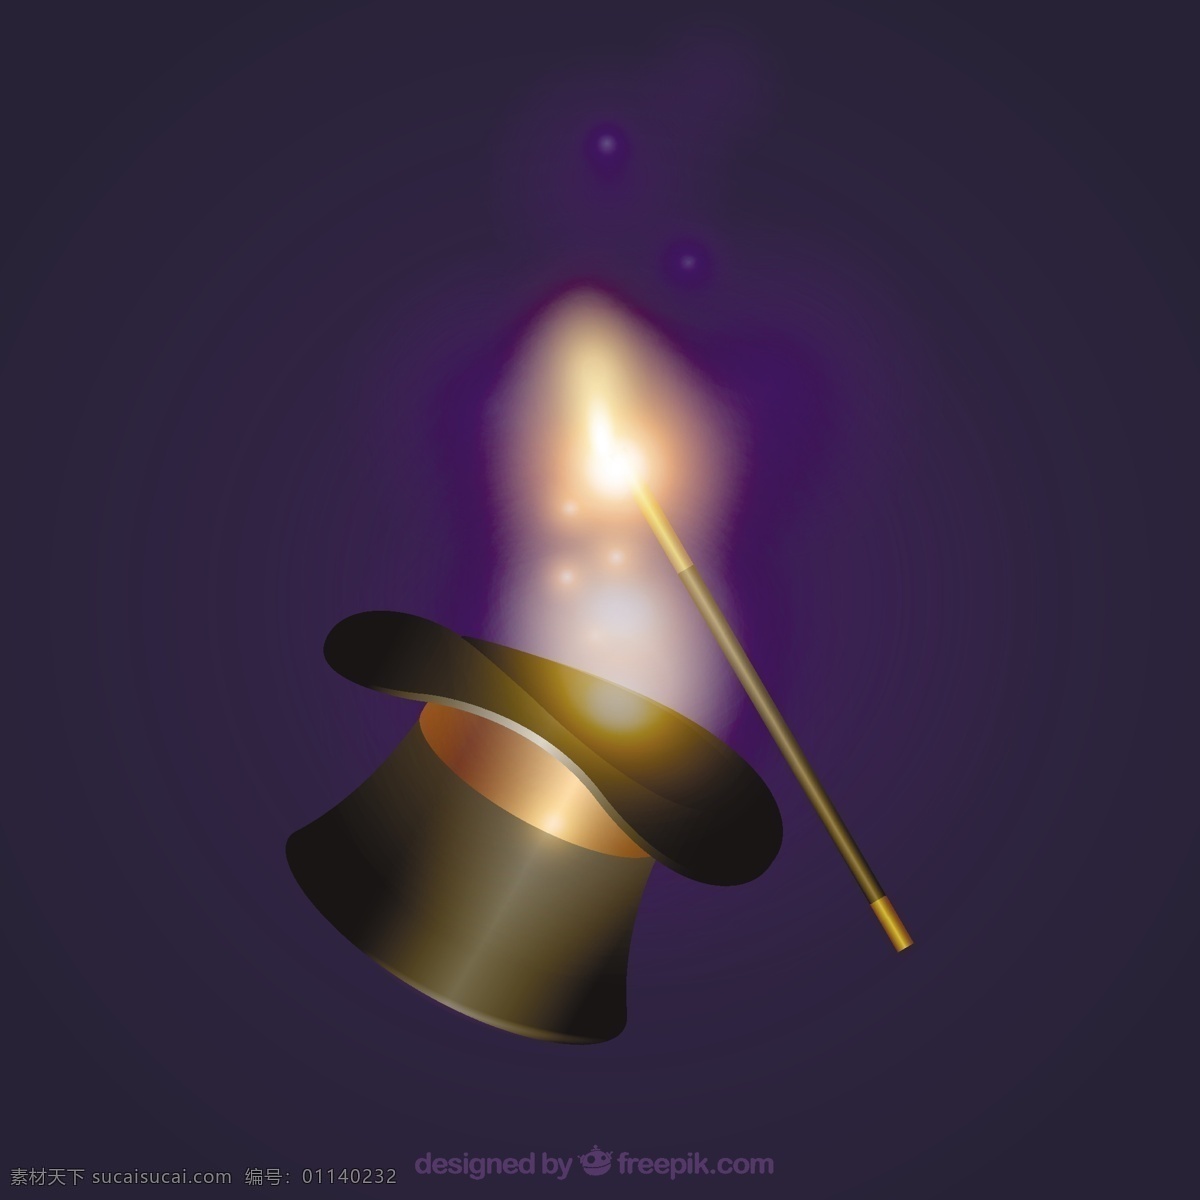 魔术帽和魔杖 帽子 魔术 表演 想象 魔术师 巫师 魔术棒 神秘 魔法 魔杖 符咒